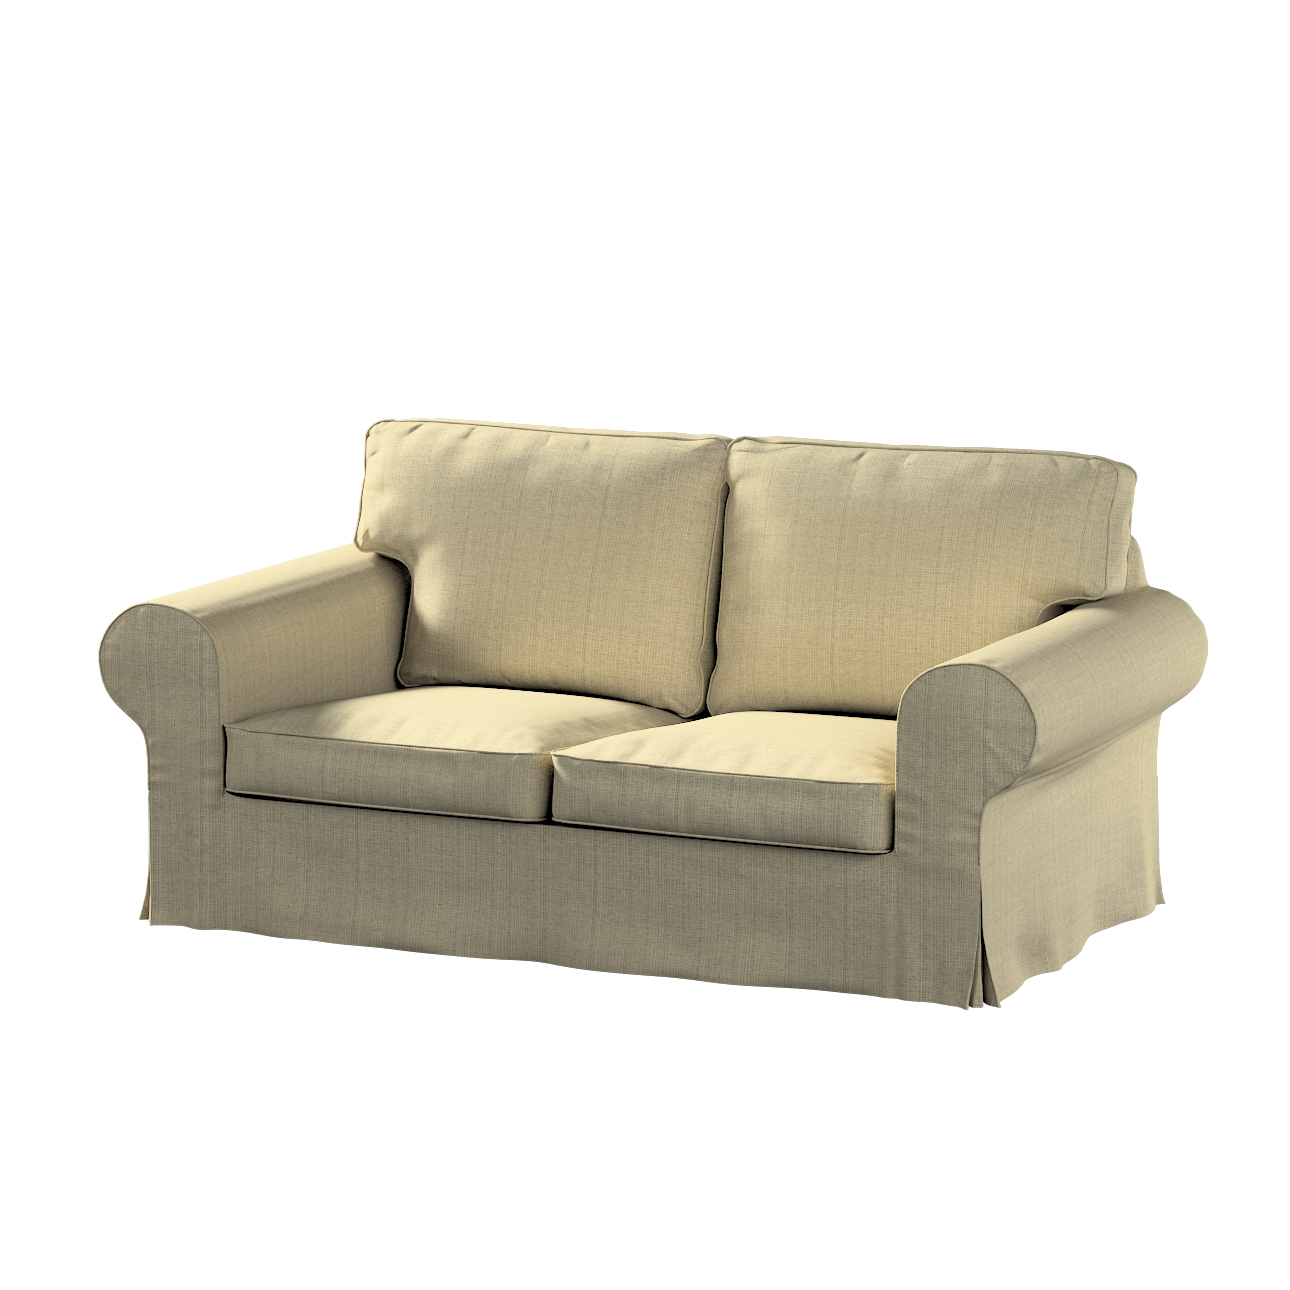 Bezug für Ektorp 2-Sitzer Sofa nicht ausklappbar, beige-creme, Sofabezug fü günstig online kaufen